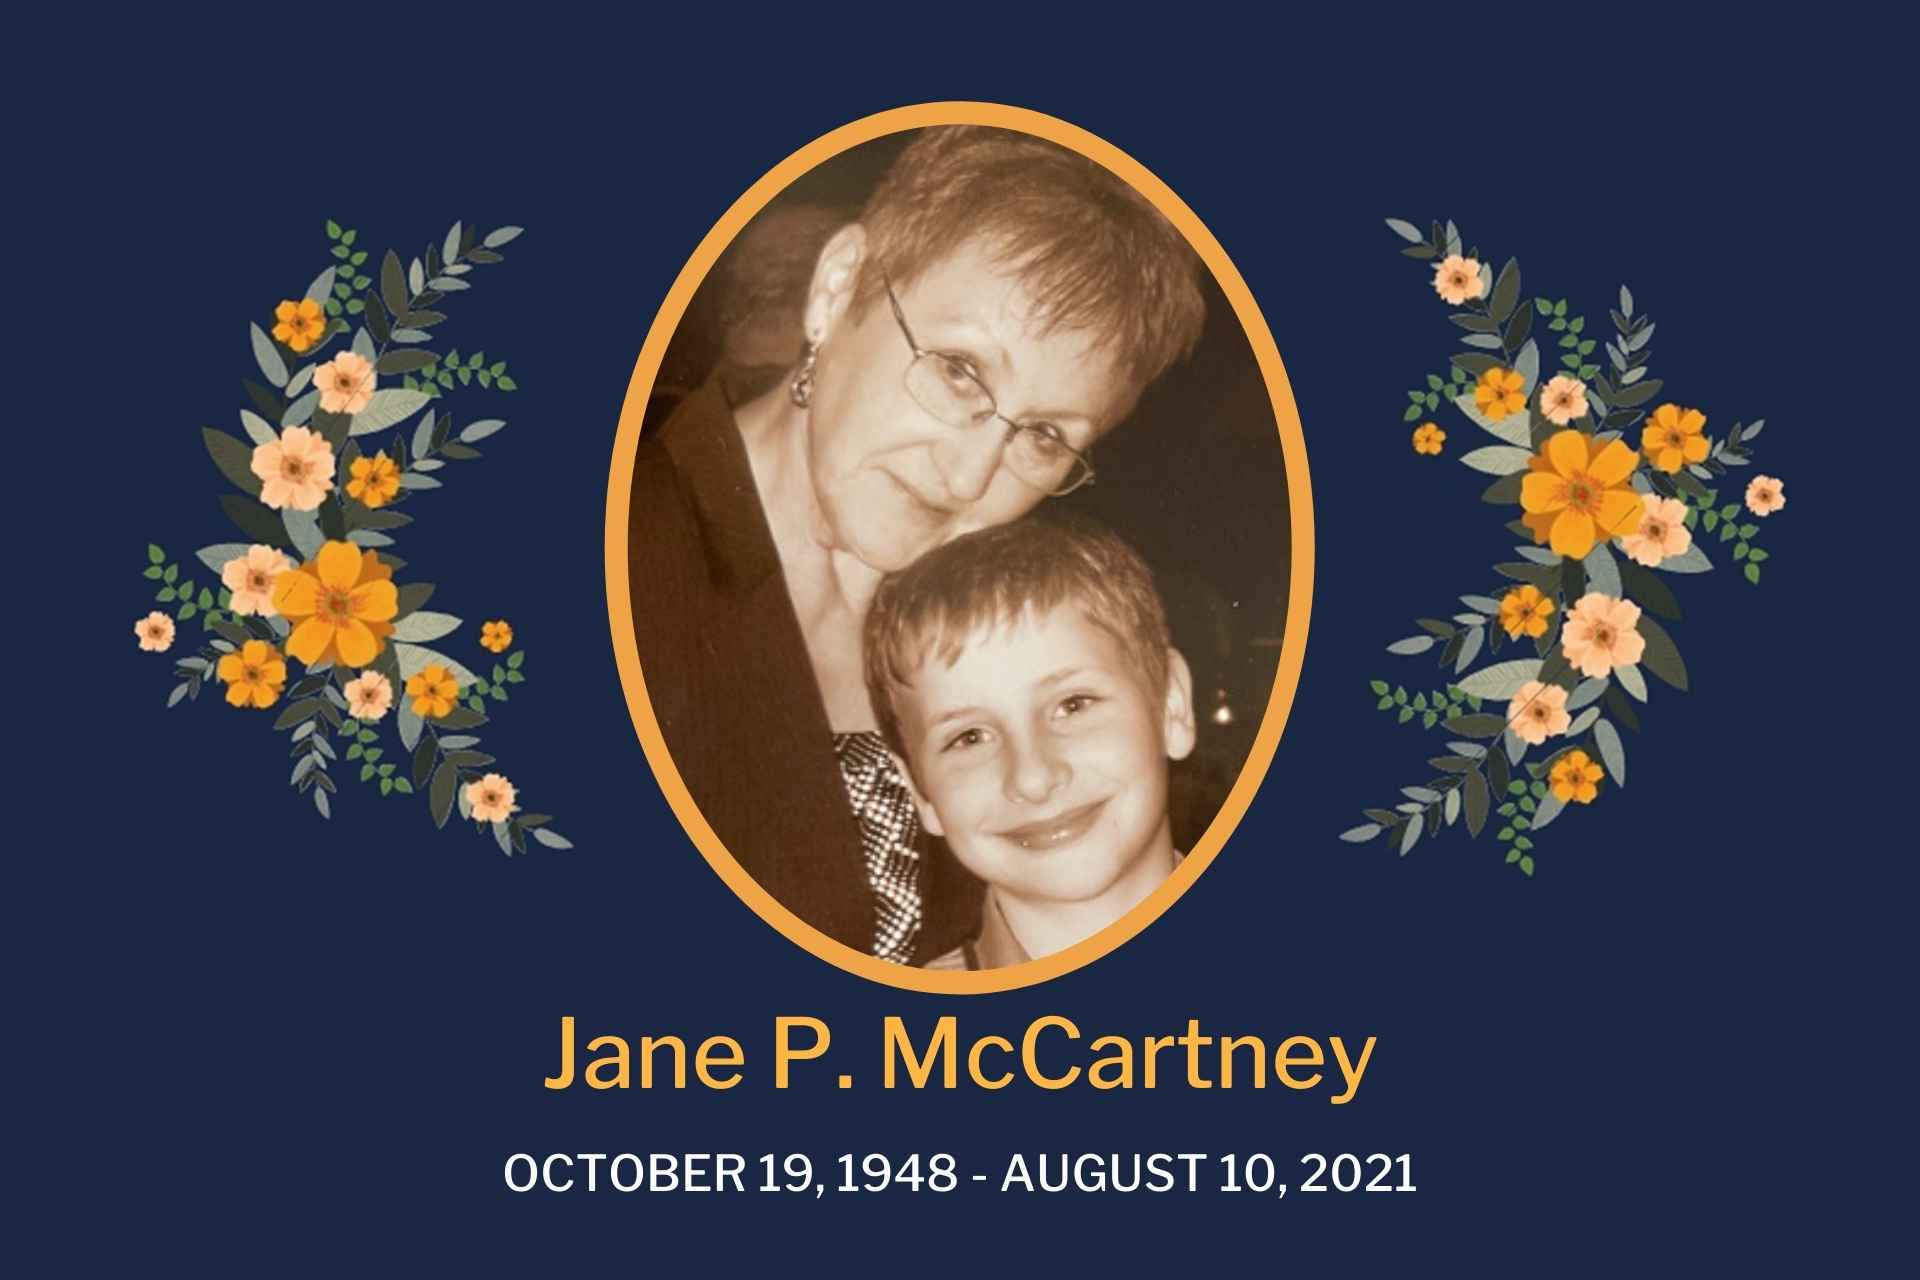 Obituary Jane McCartney